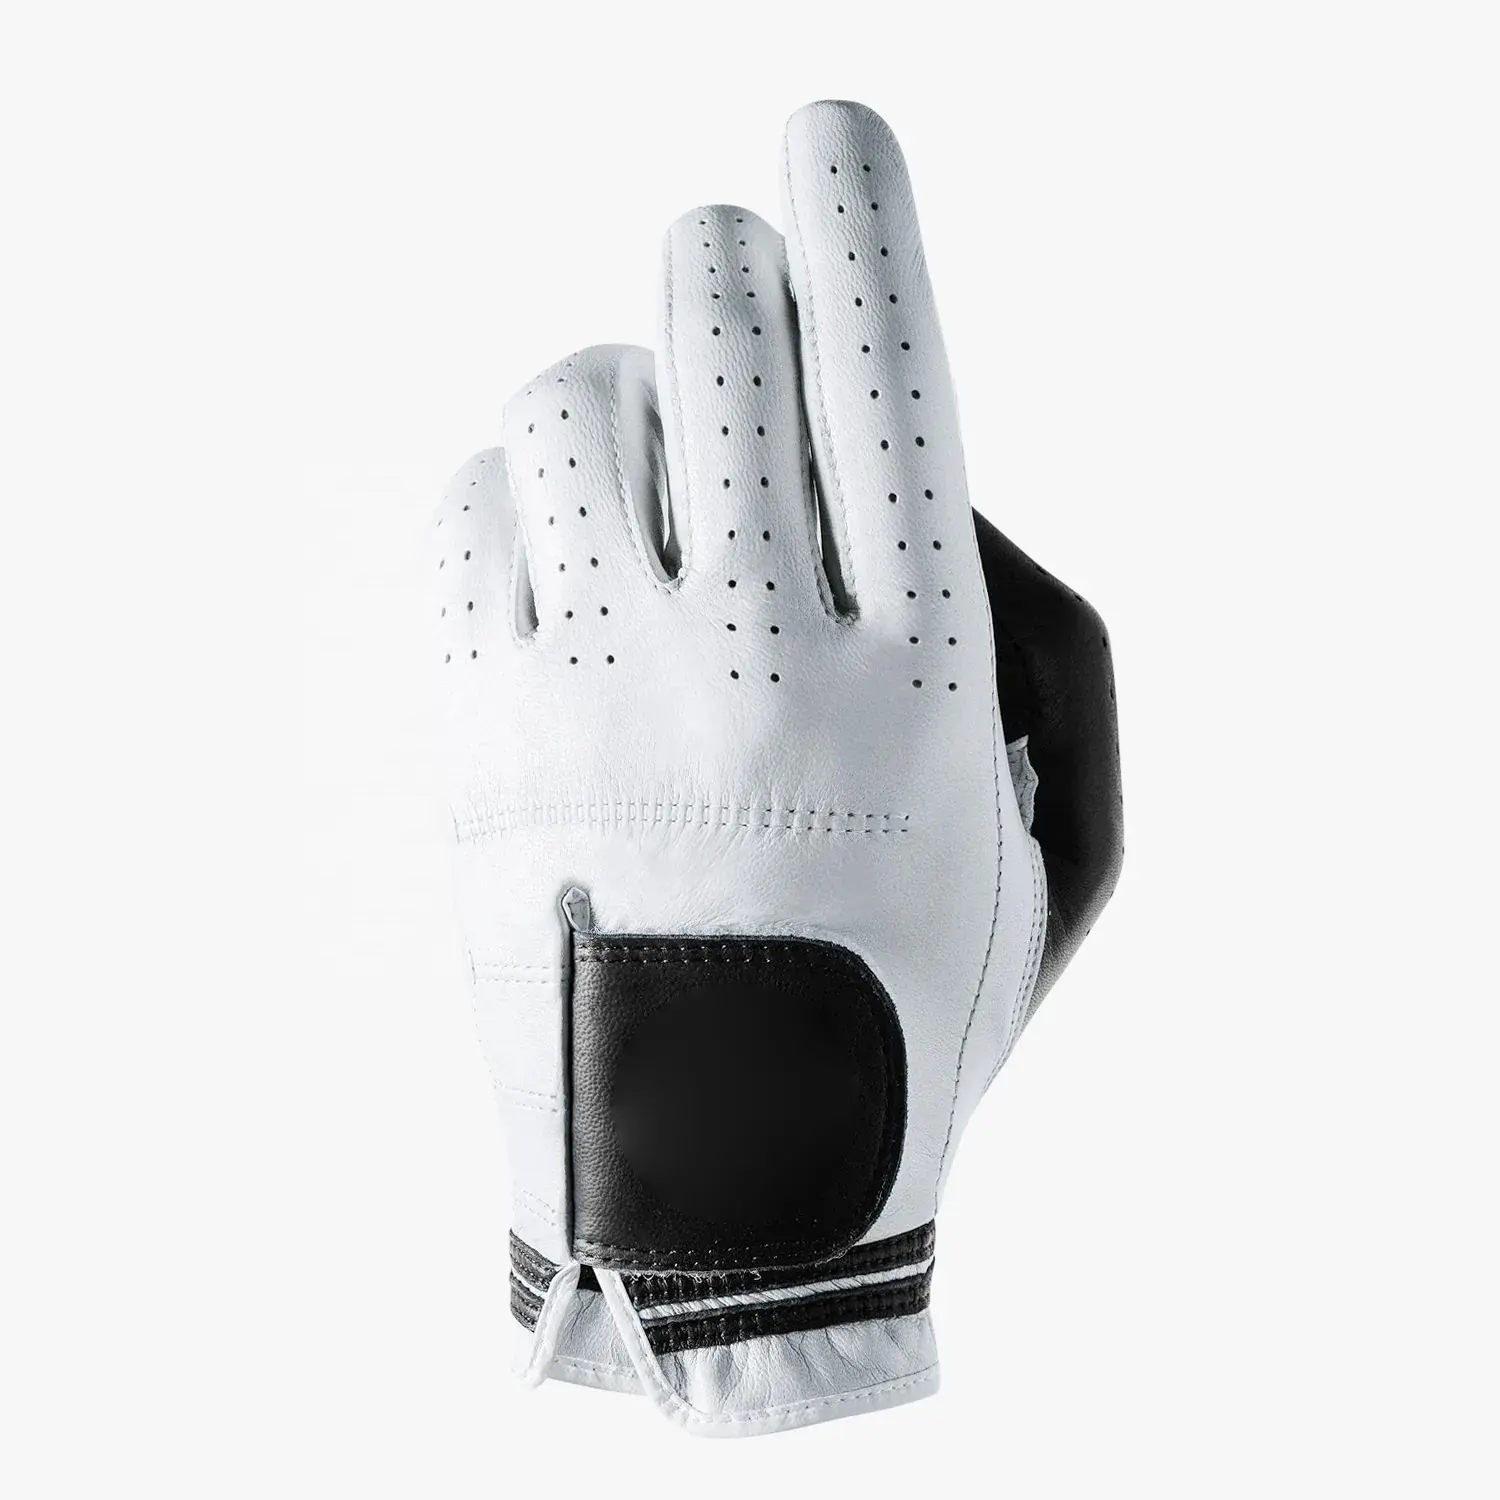 Gants de Golf en cuir Cabretta personnalisé, couleur blanche et noire